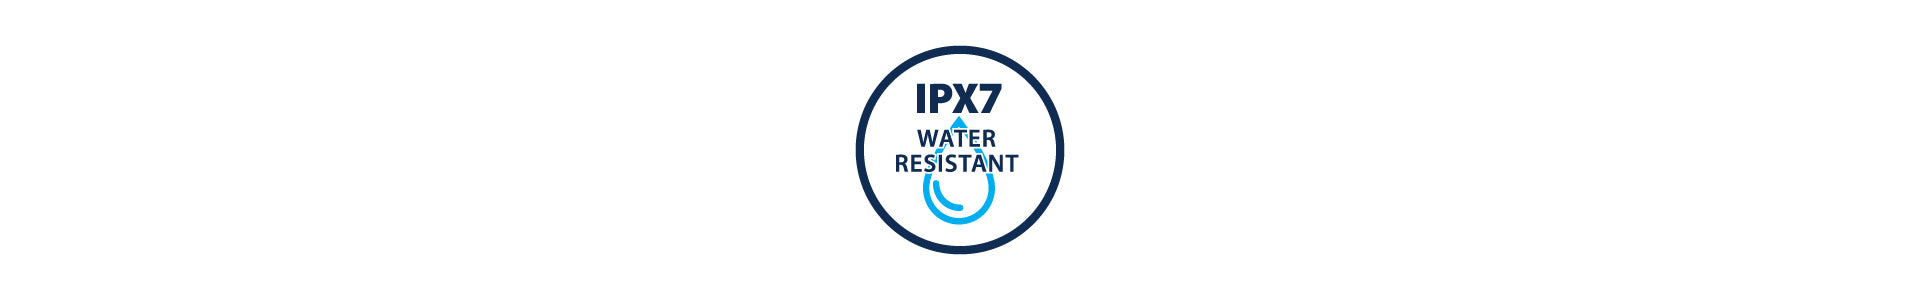 IPX7 rating technology logo.